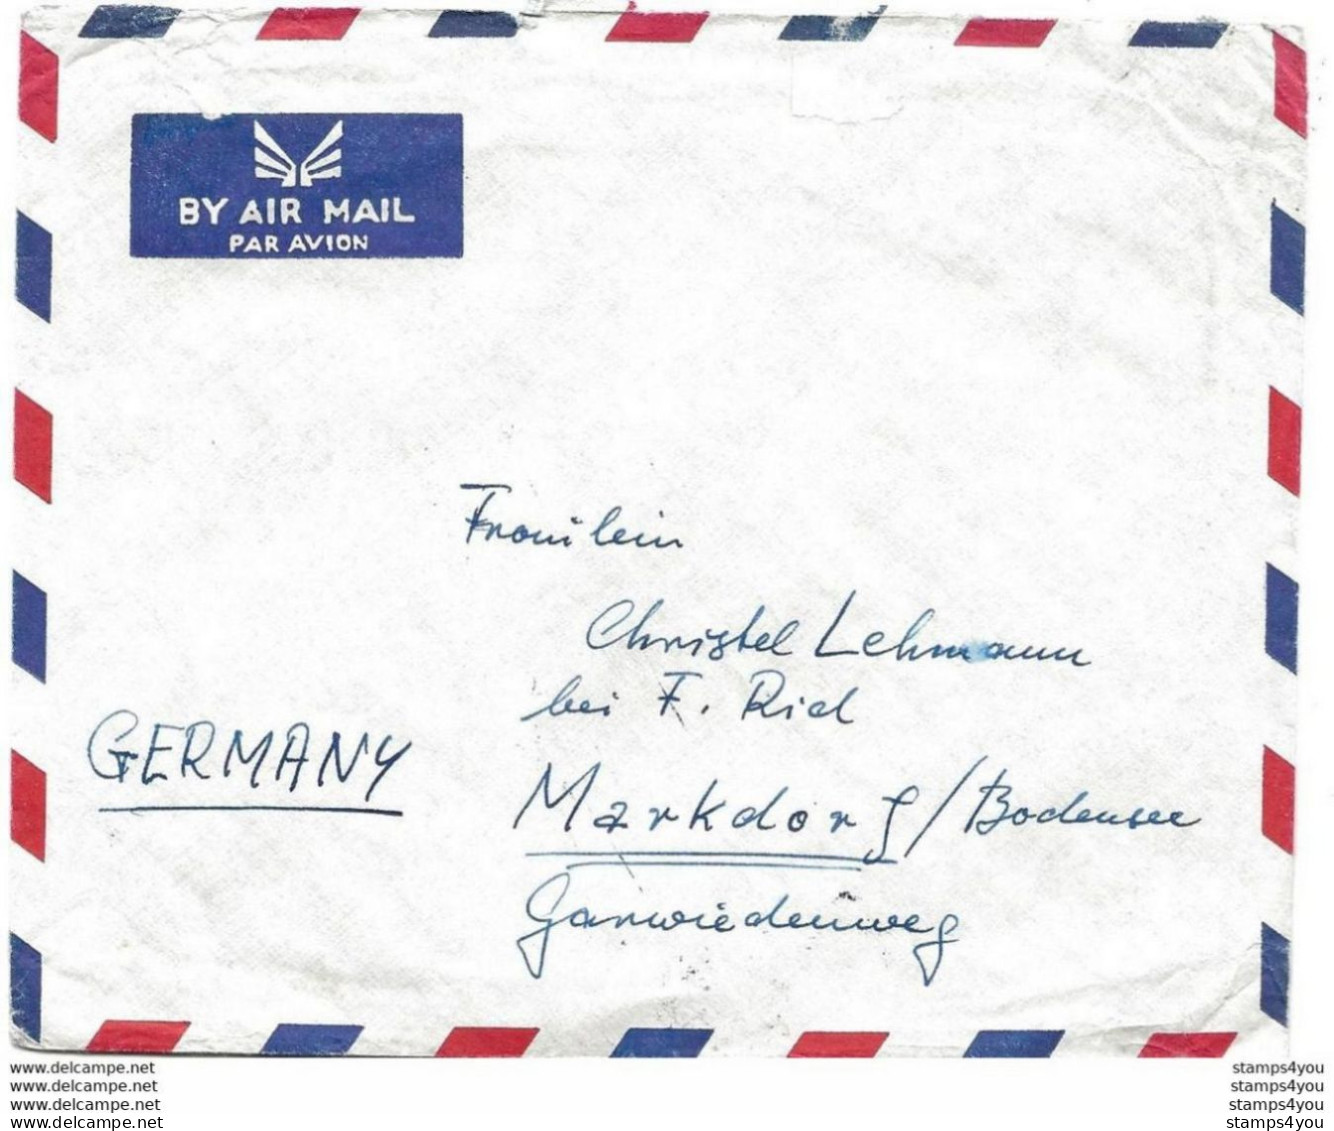 239 - 17 - Enveloppe Envoyée De Jeddah En Allemagne - Arabie Saoudite